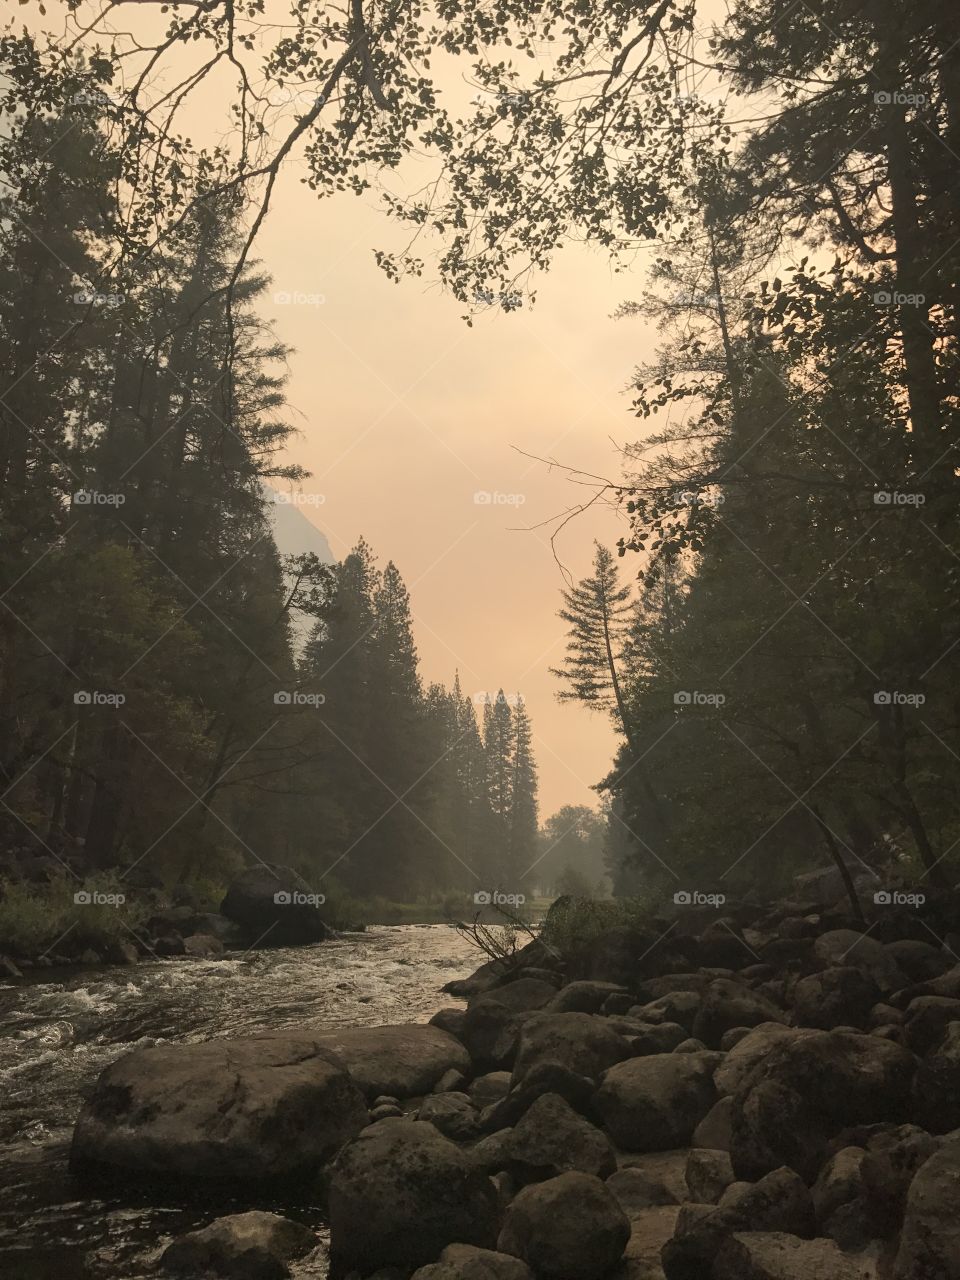 Smokey morning in Yosemite 